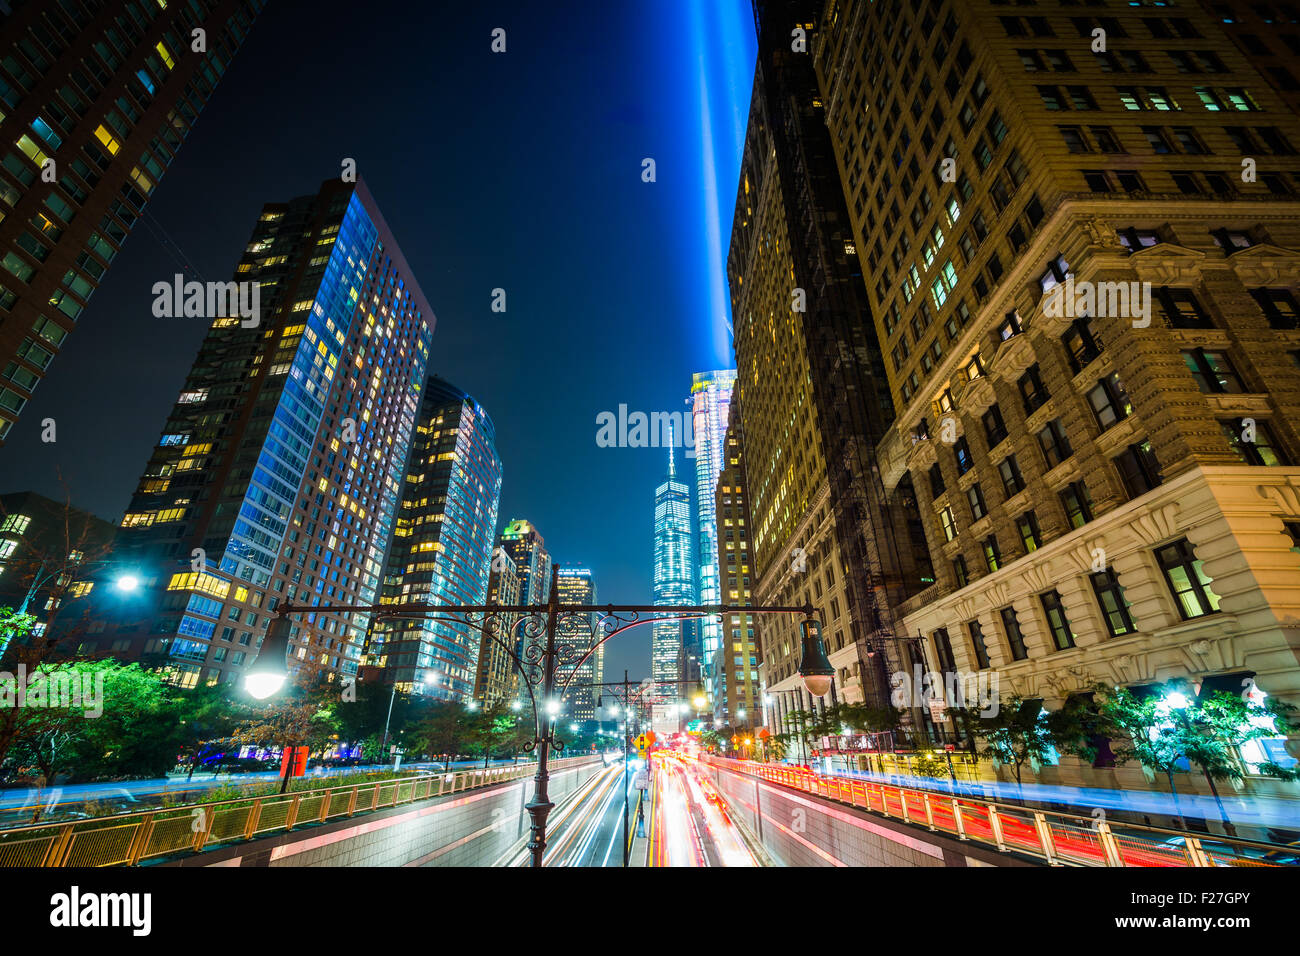 Le passage souterrain et Battery Park 1 World Trade Center à l'hommage rendu à la lumière, vu la nuit dans le Lower Manhattan, New York. Banque D'Images